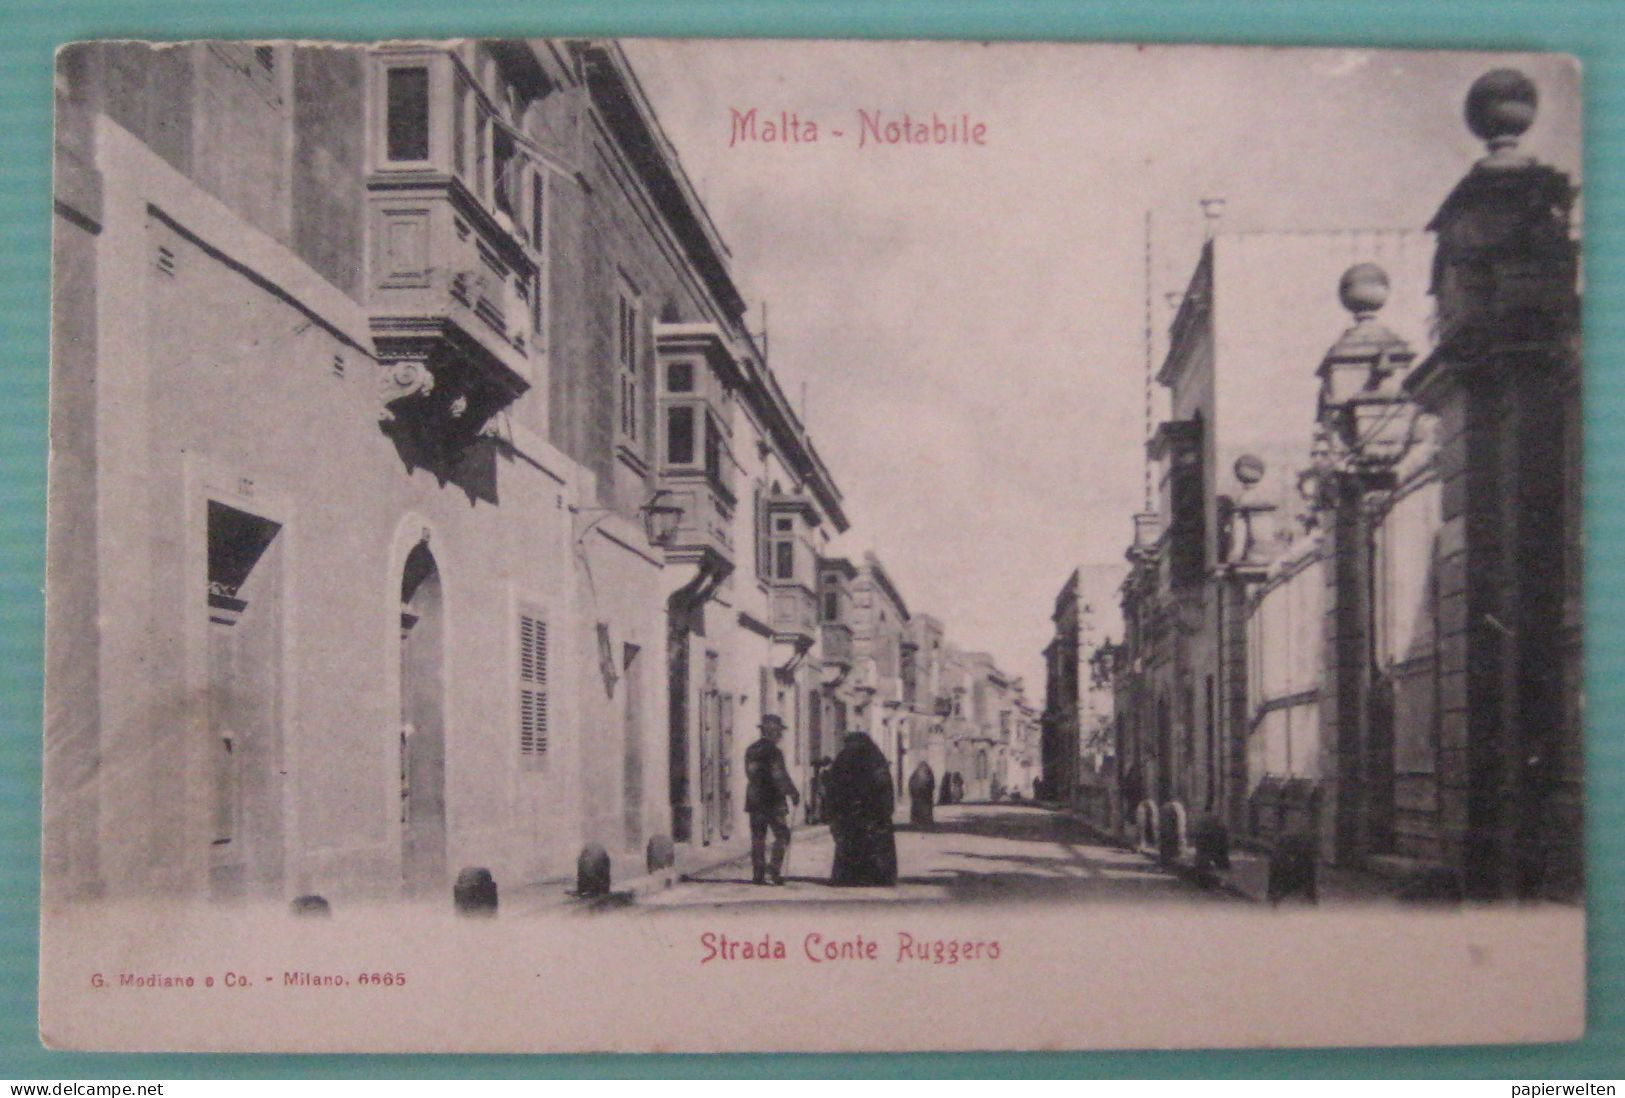 Malta - Notabile: Strada Conte Ruggero - Malta